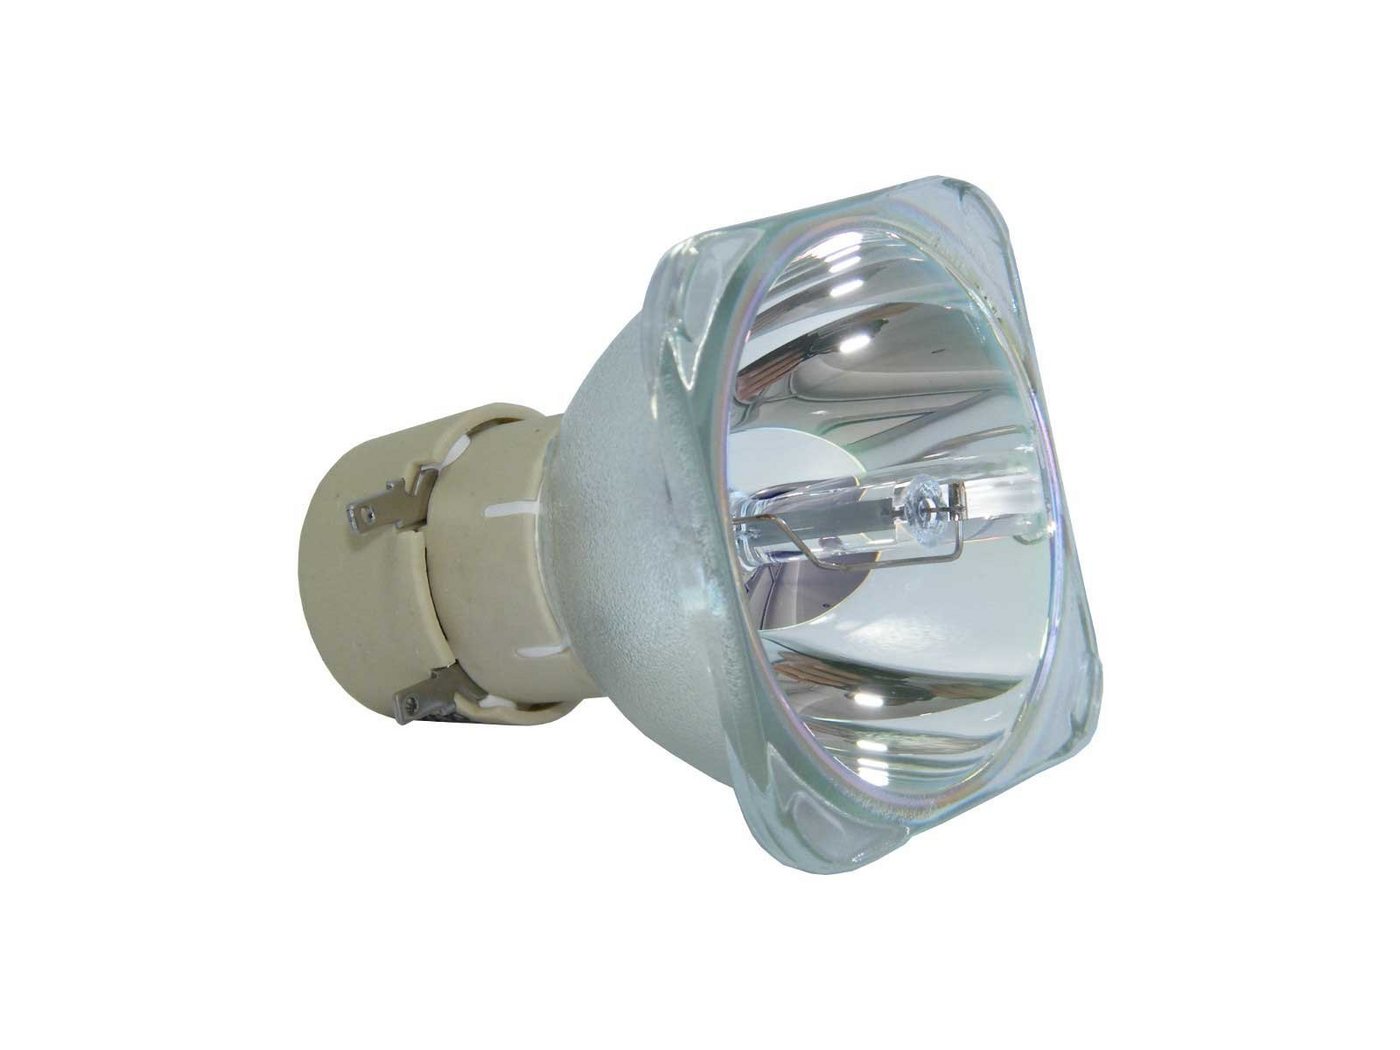 azurano Beamerlampe, 1-St., für RICOH 513744 TYPE27, preiswert, umwelt- & ressourcenschonend von azurano